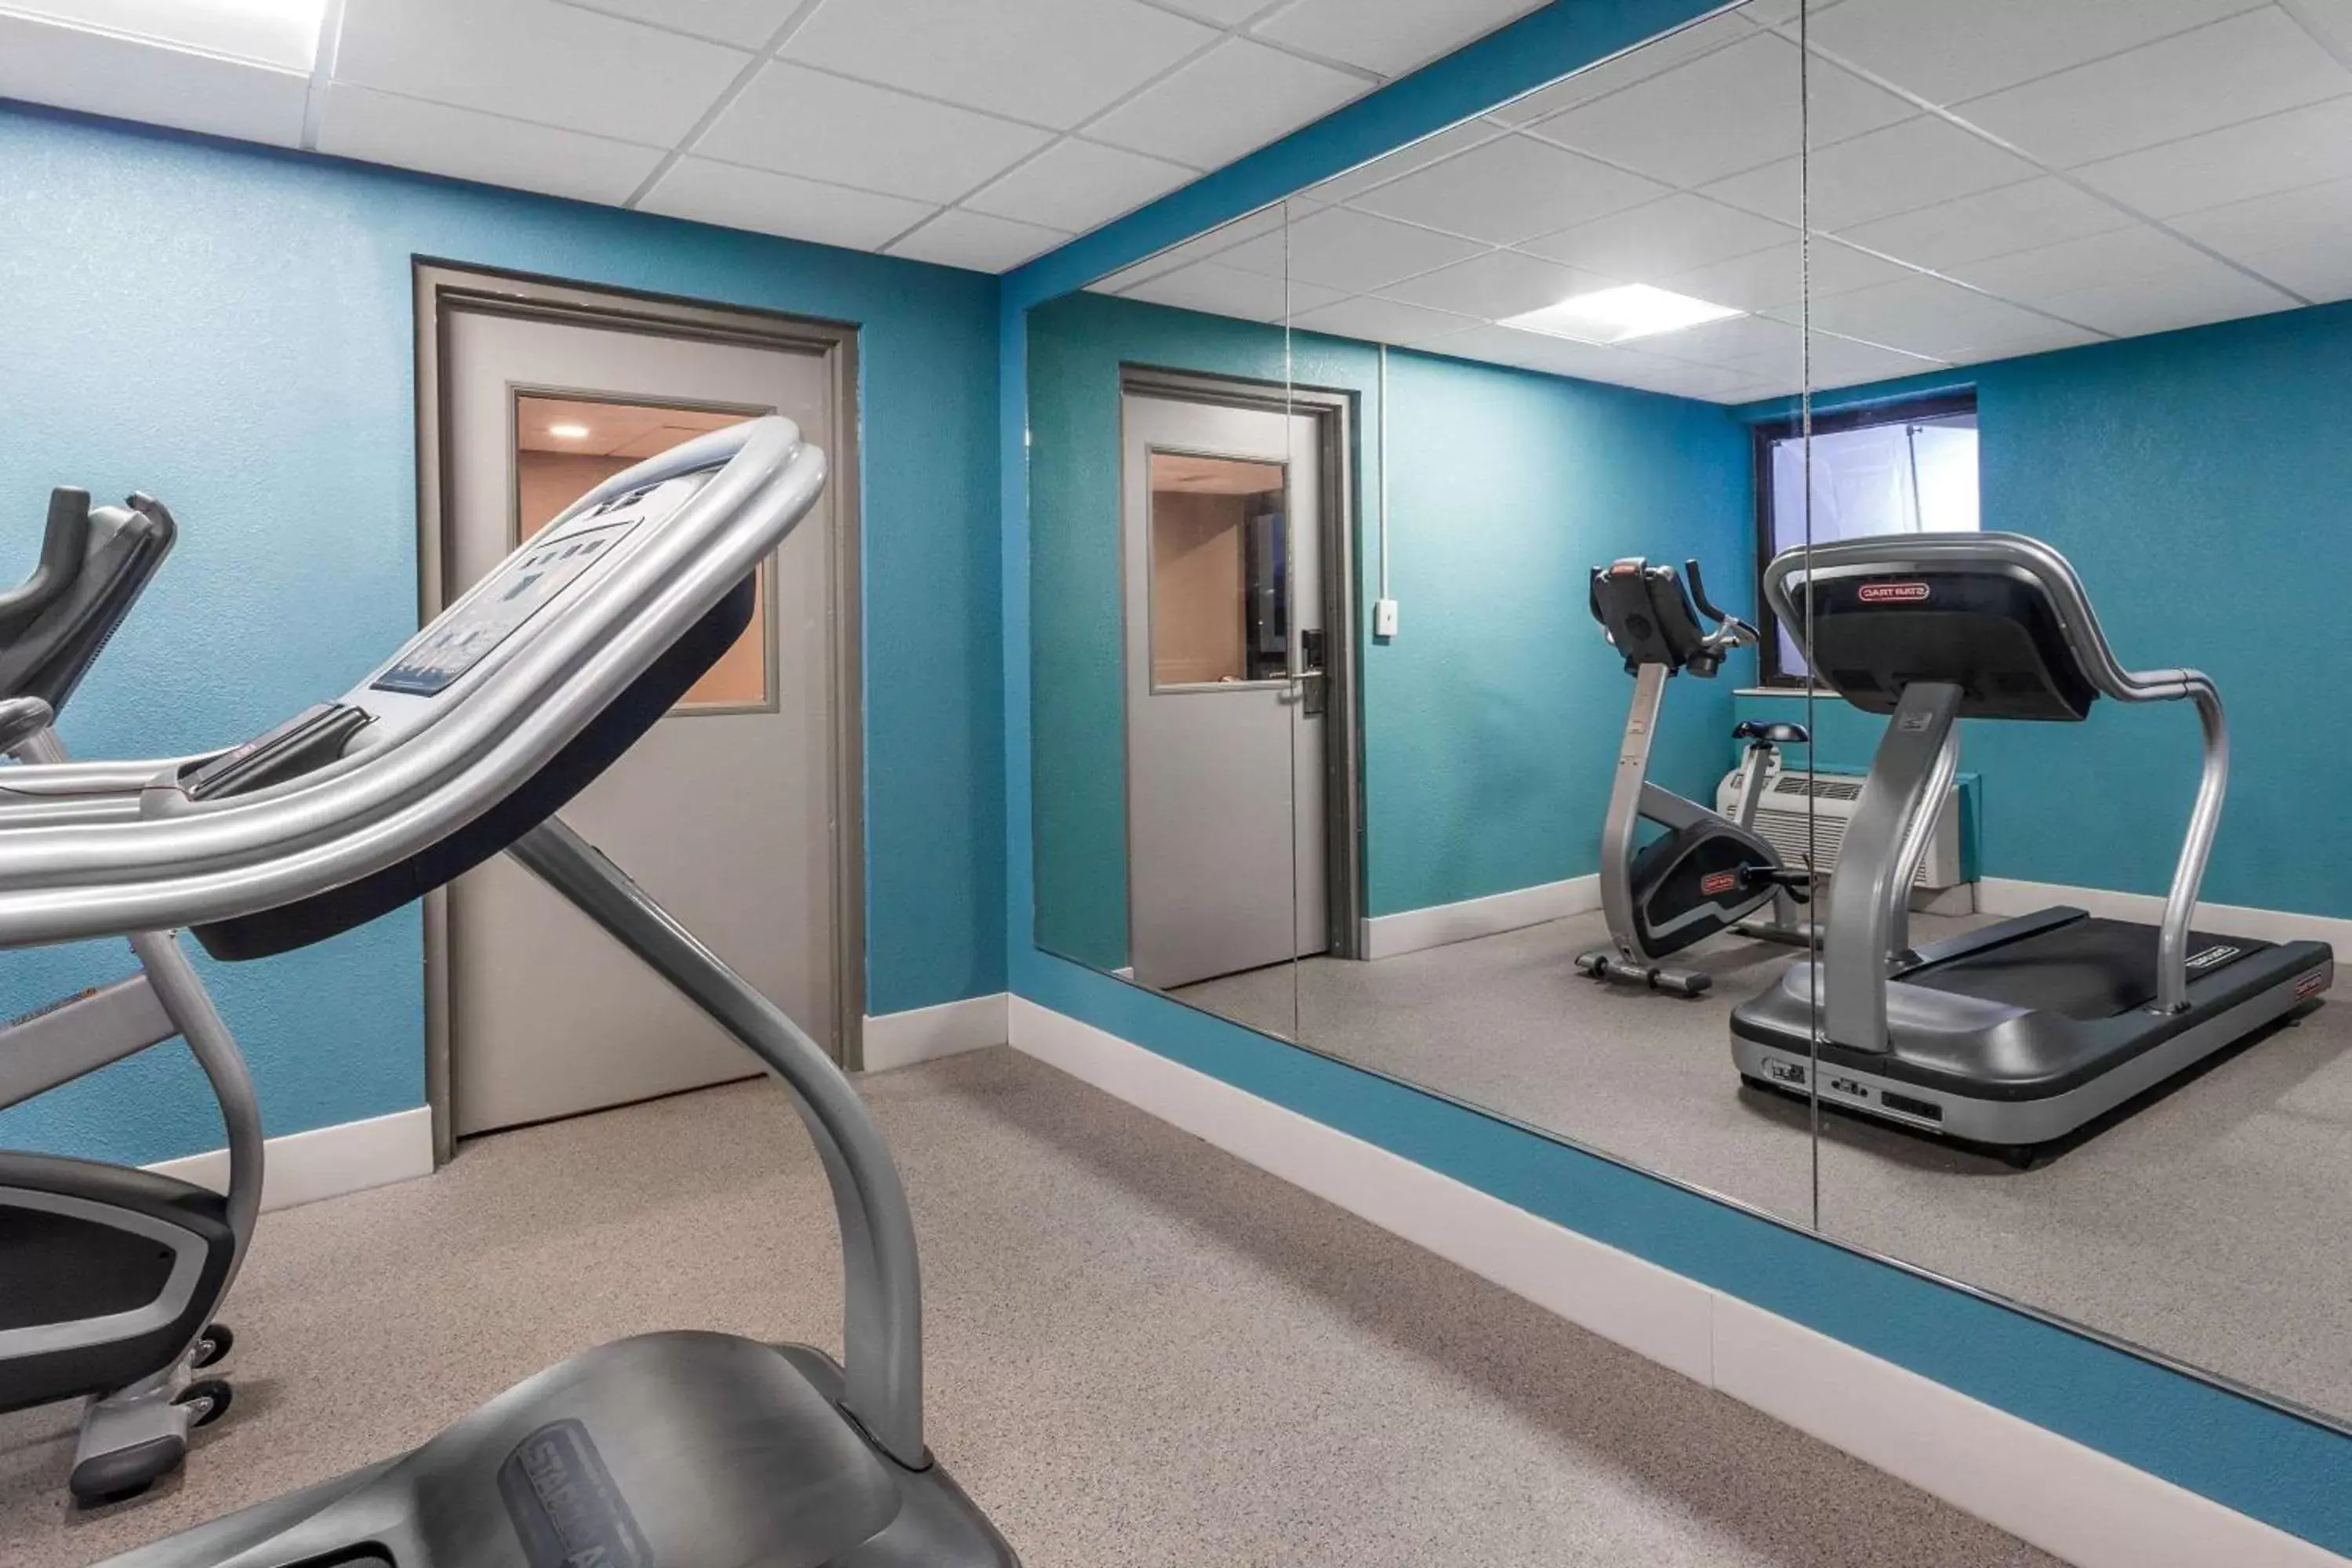 Fitness centre/facilities, Fitness Center/Facilities in Sleep Inn Terre Haute University Area